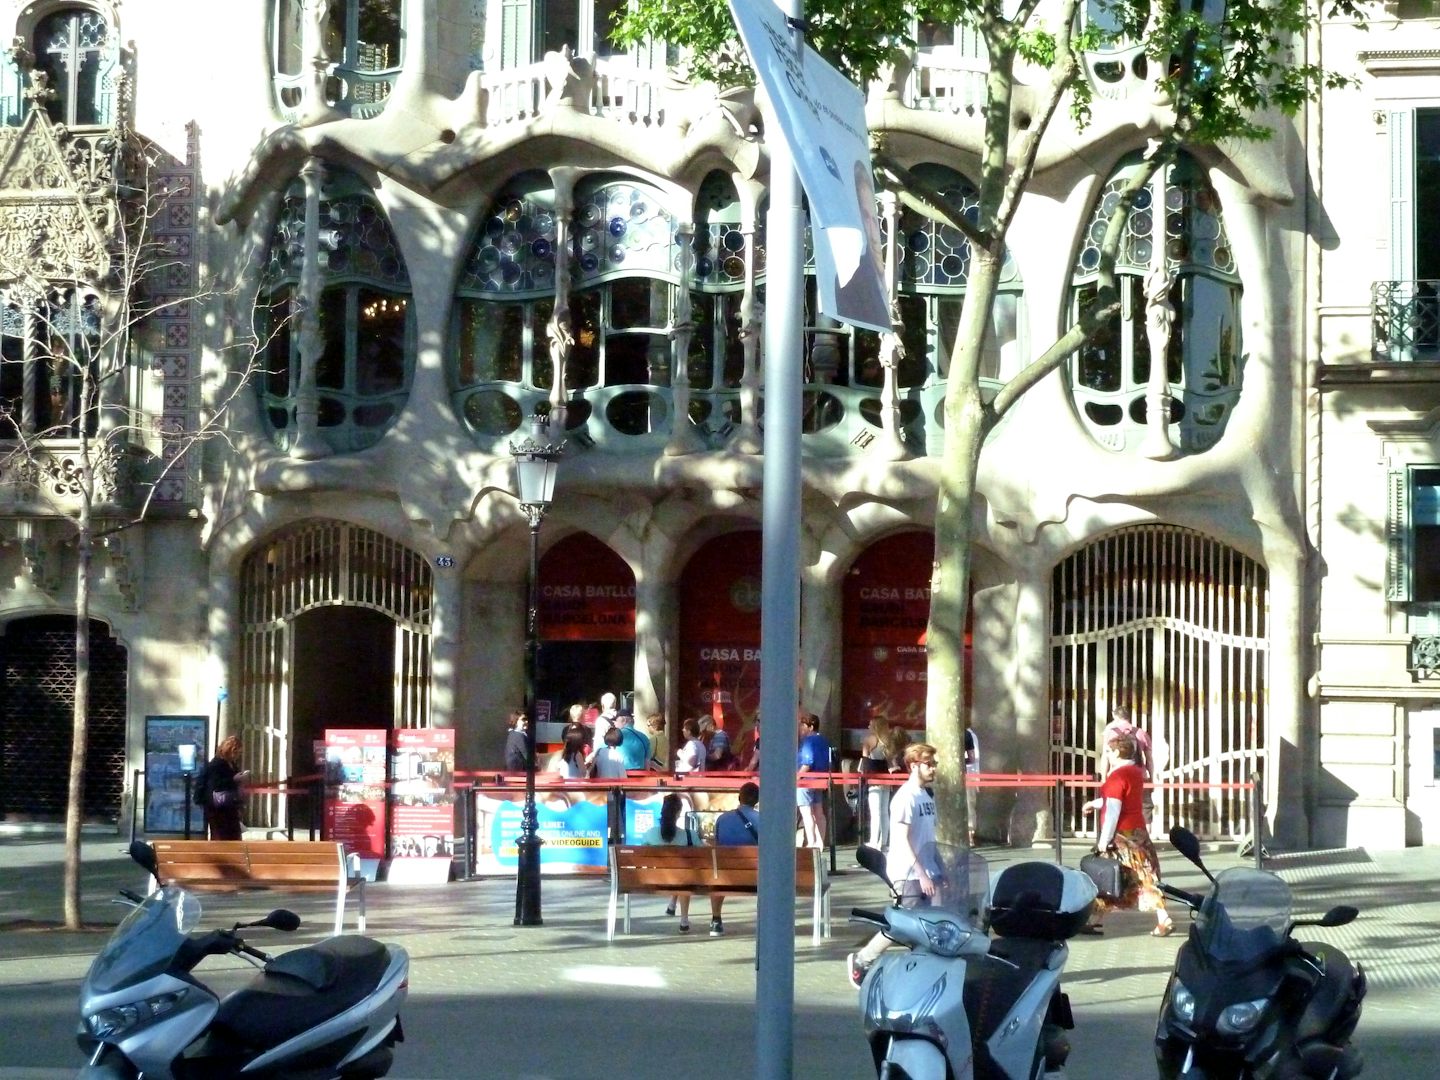 La Pedera, one of Gaudi's main residential buildings and most imaginati